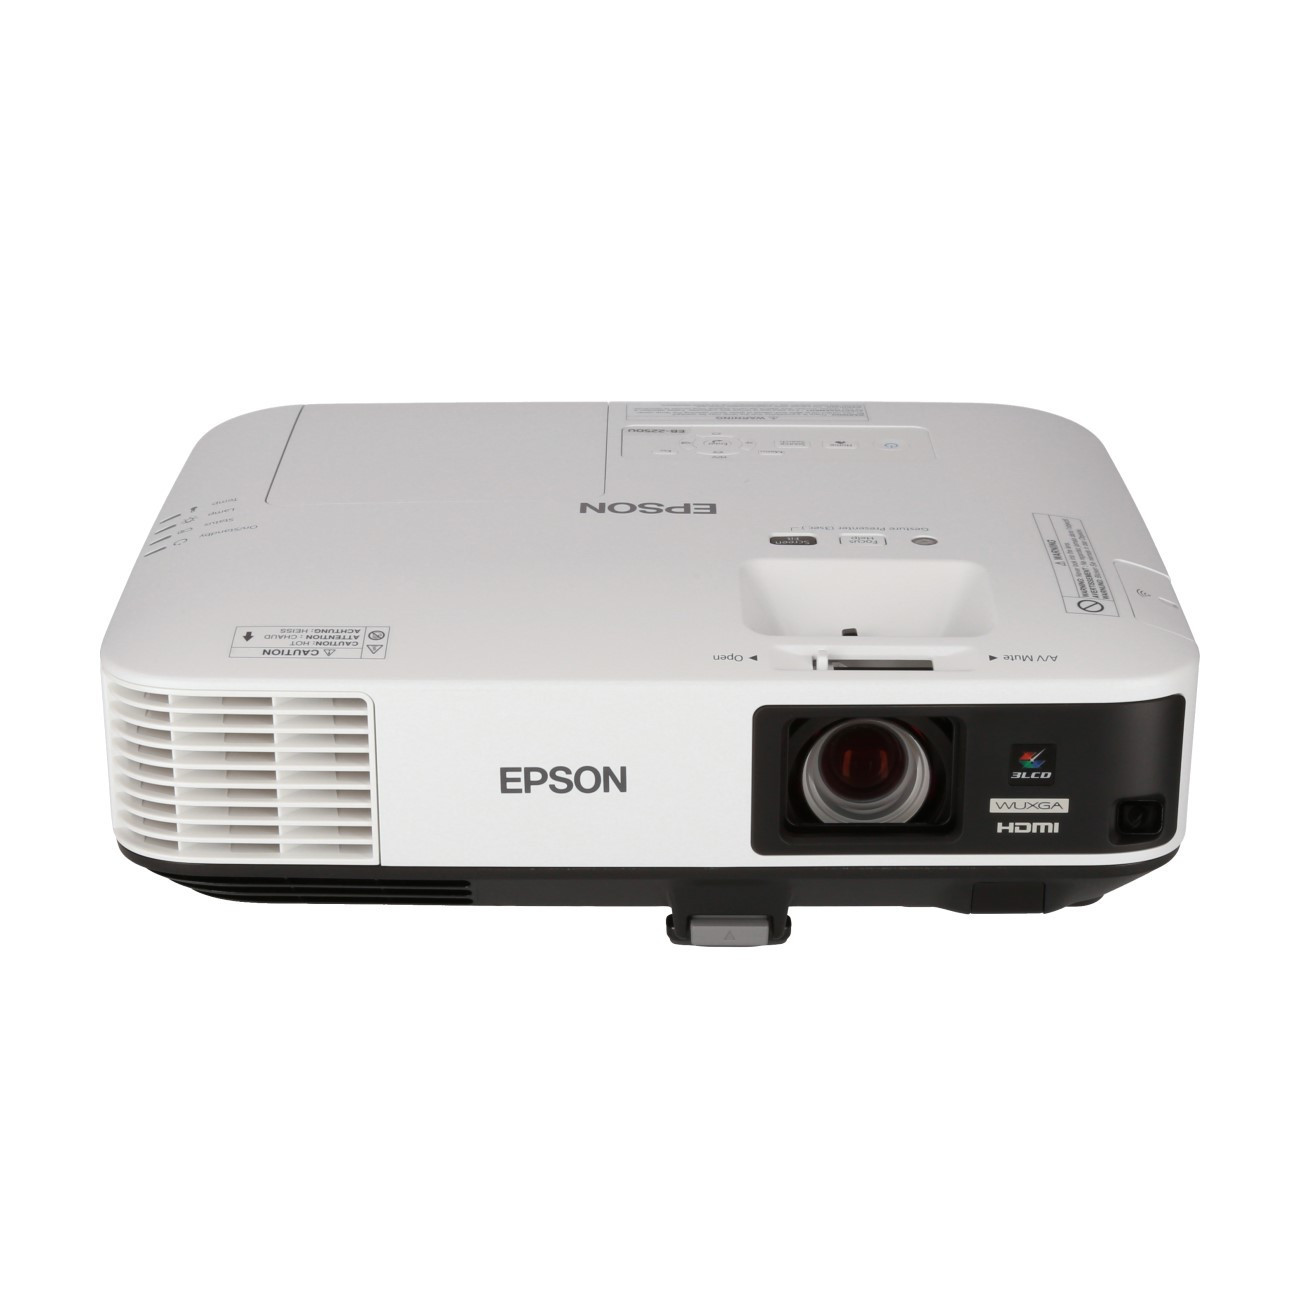 Vorschau: Epson EB-2250U Business Beamer mit 5000 ANSI-Lumen und WUXGA Auflösung - Demo